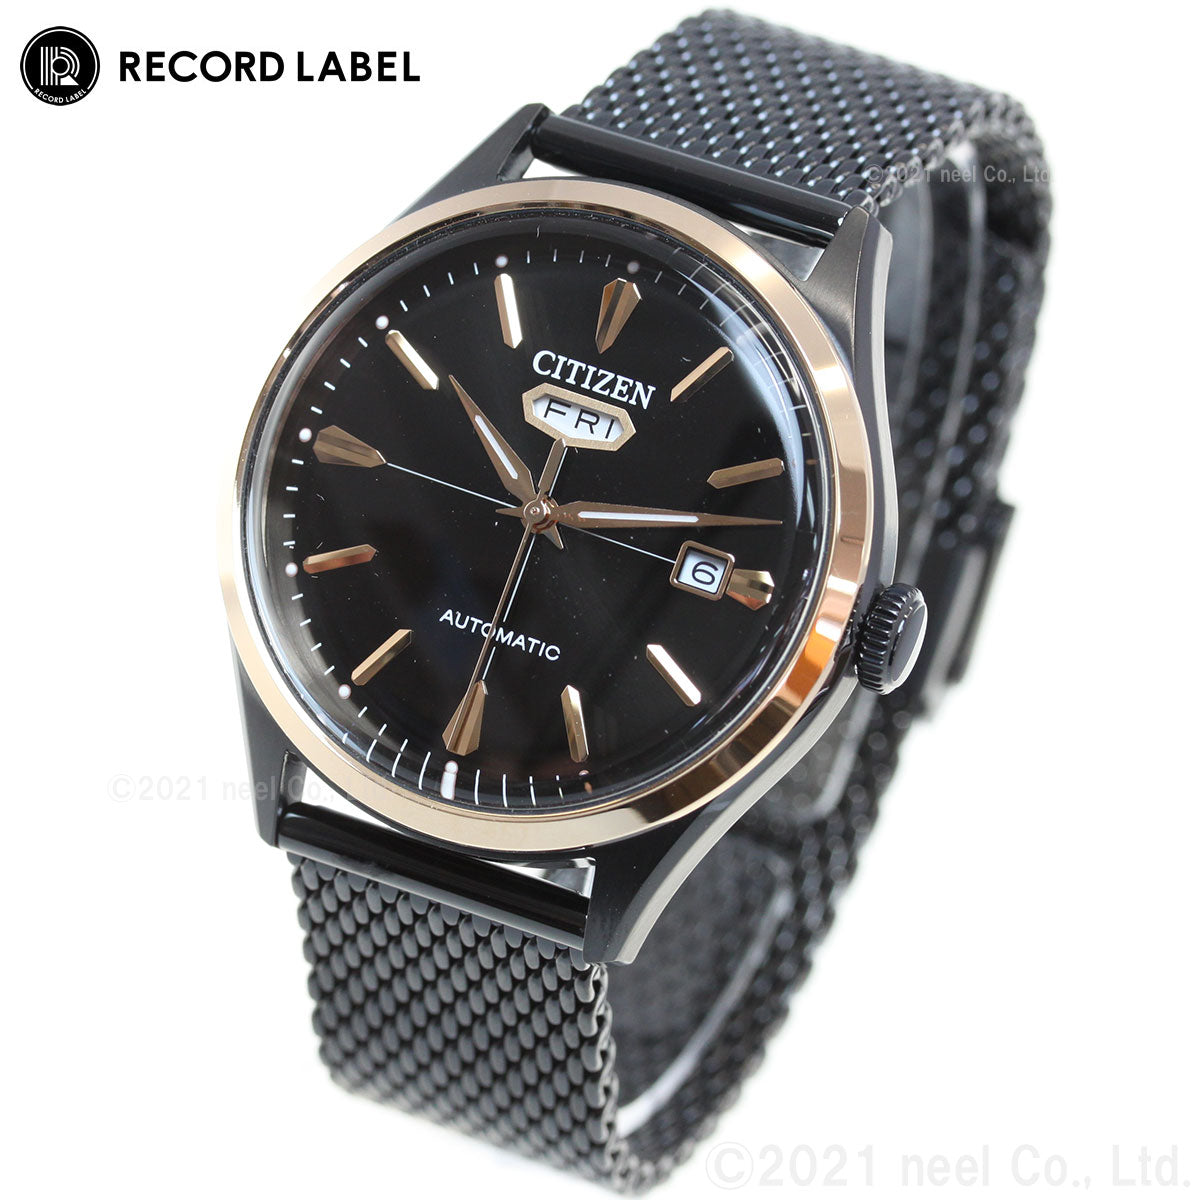 シチズン レコード レーベル 特定店取扱いモデル 腕時計 メンズ 自動巻き C7 クリスタルセブン 機械式 RECORD LABEL 